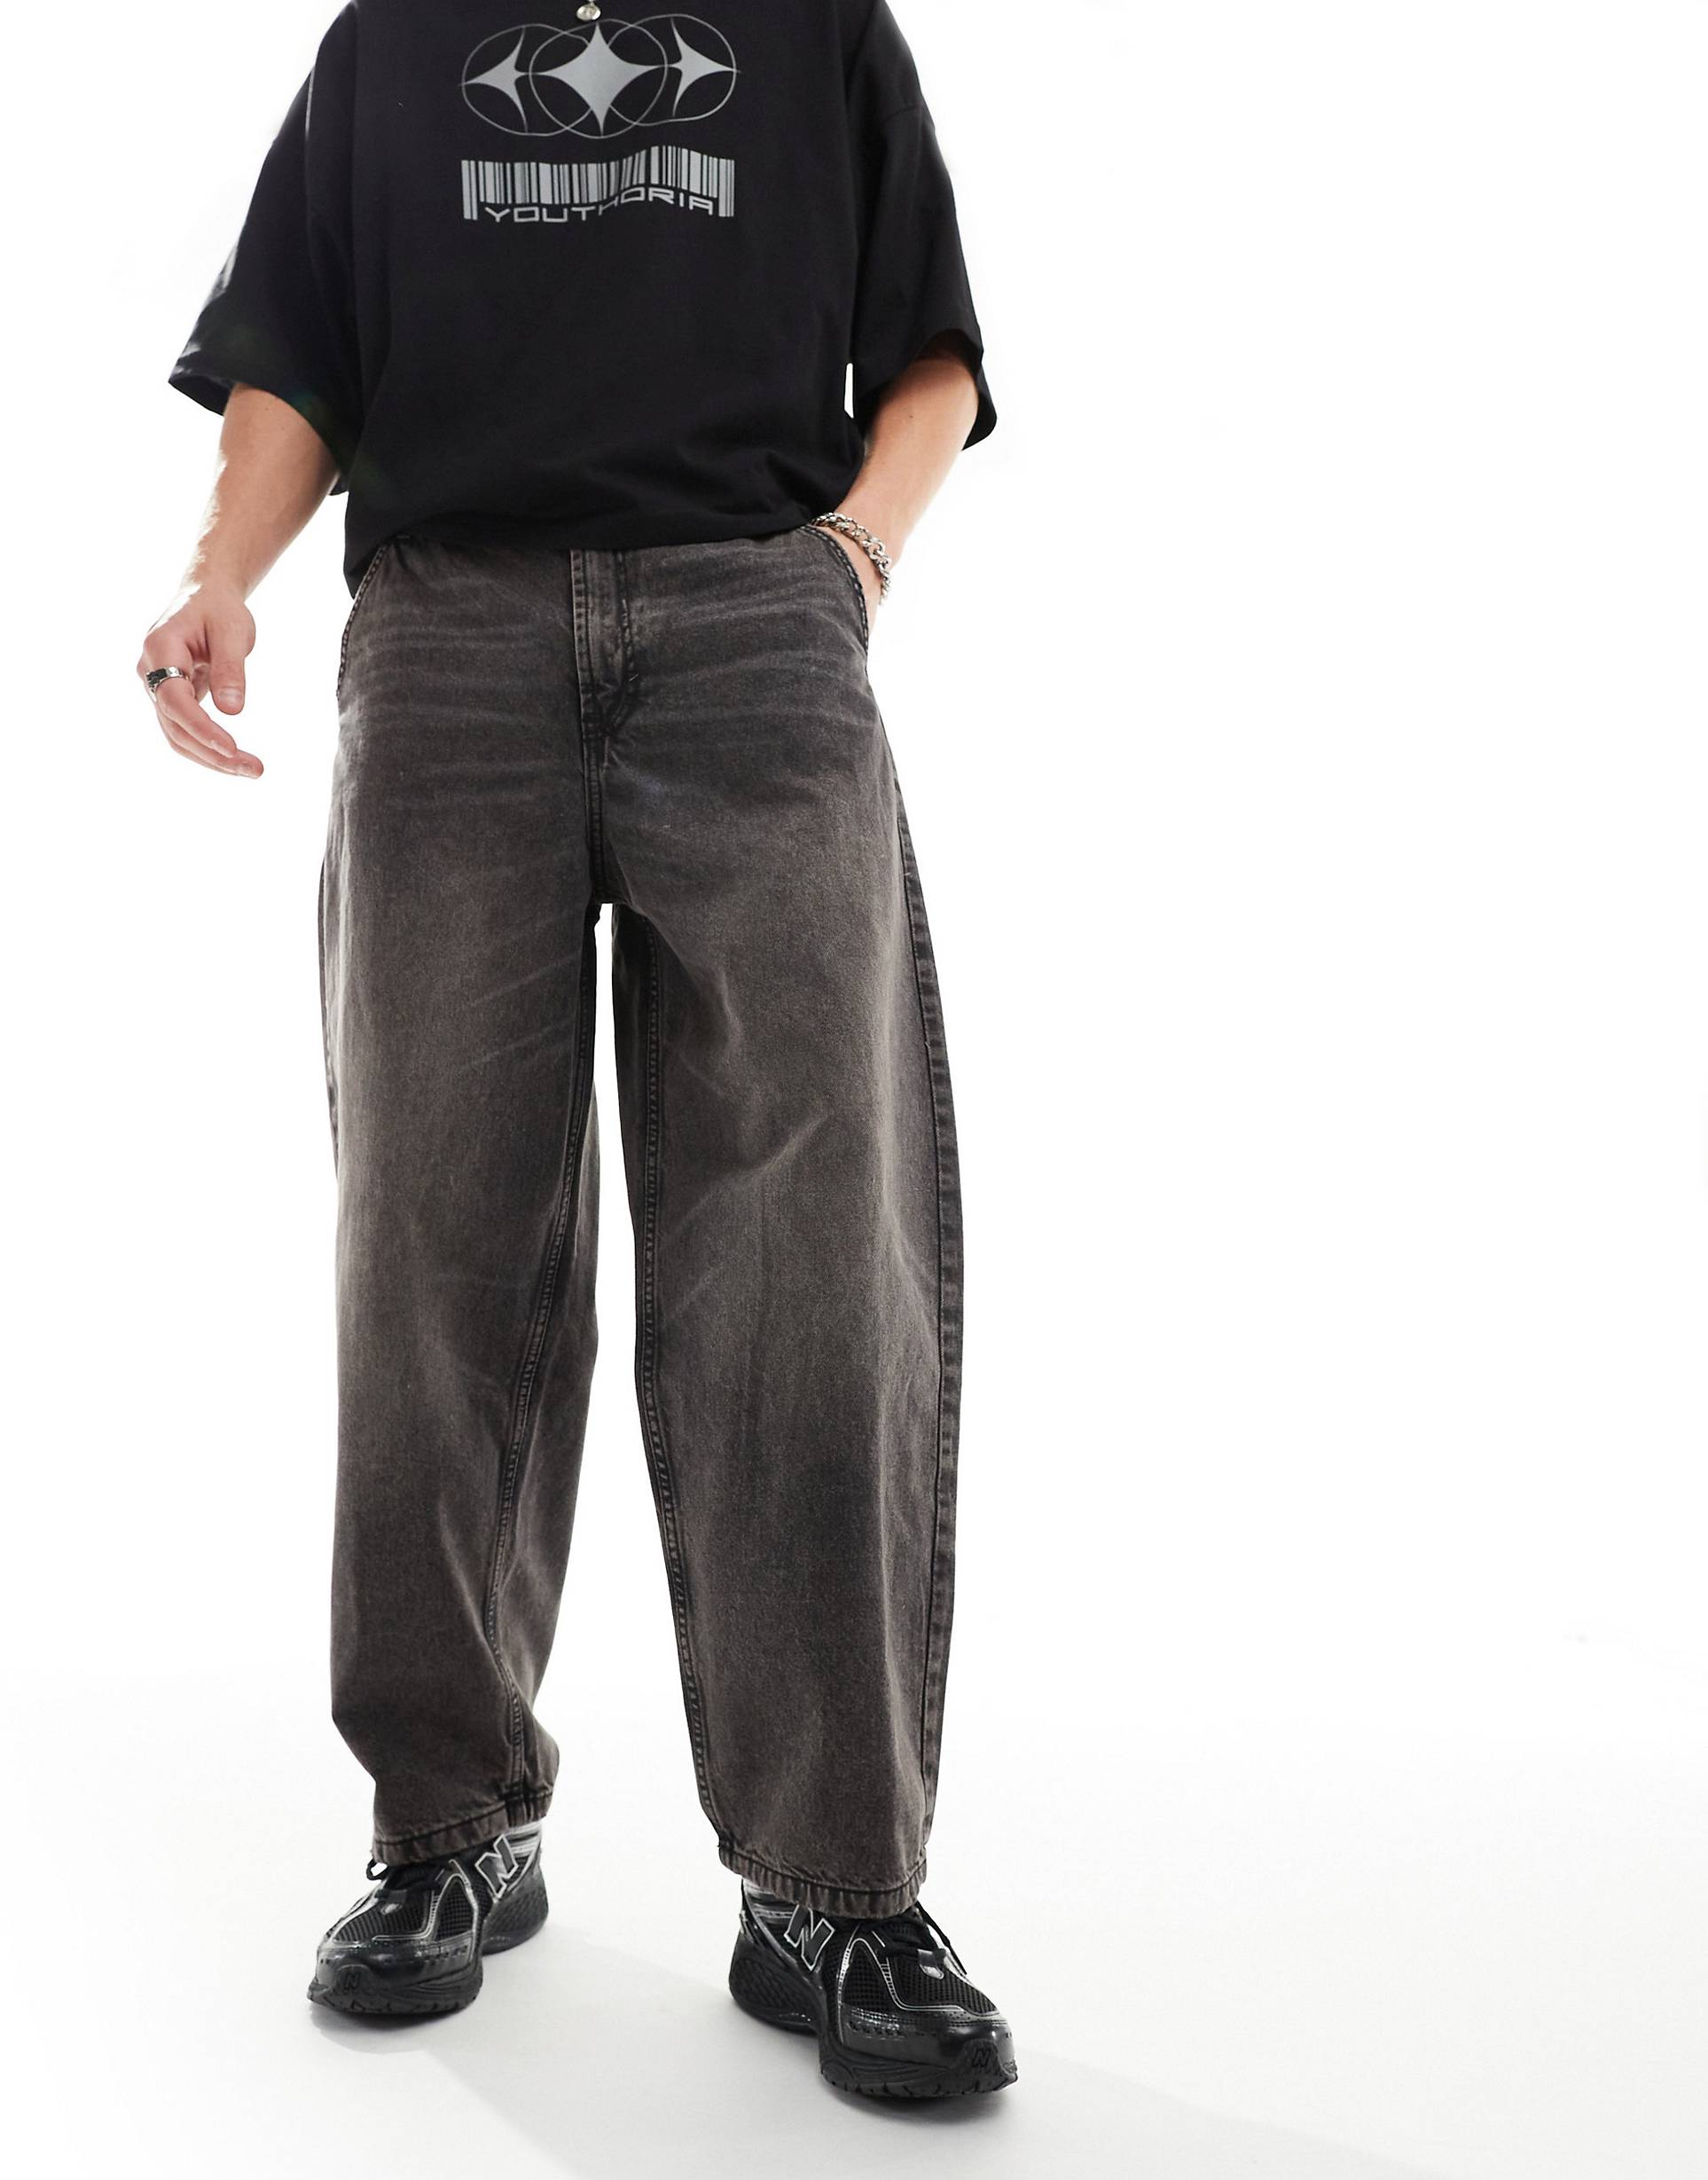 Джинсы Bershka Skater Fit Casted, коричневый джинсы bershka зауженные 42 размер новые